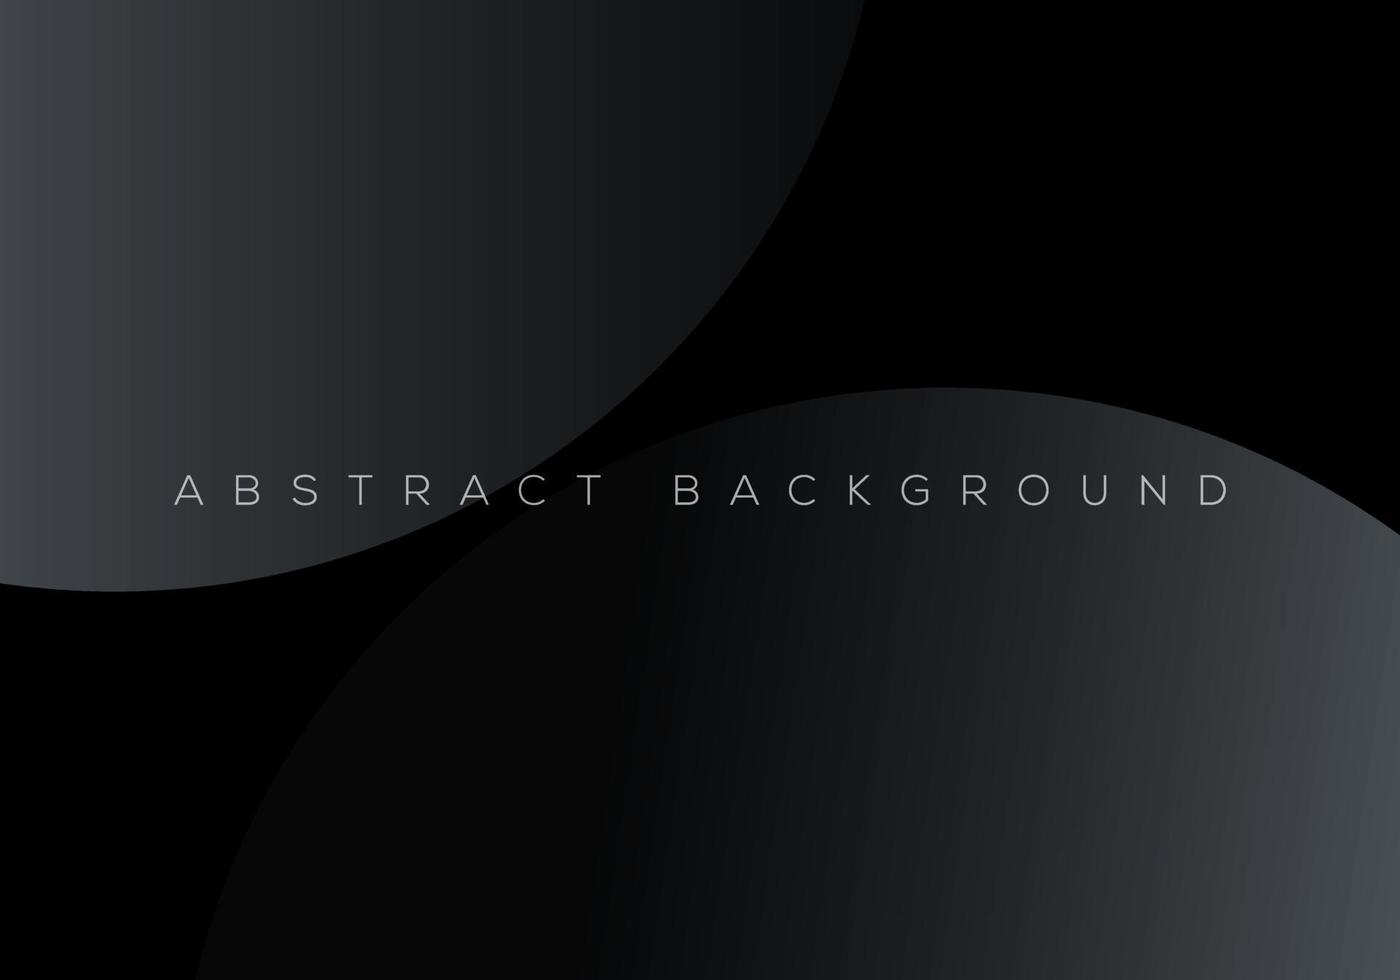 erstklassiges schwarzes abstraktes hintergrundkonzept mit luxuriösen geometrischen dunkelgrauen formen hintergrund mit kopienraum für text oder nachricht vektor